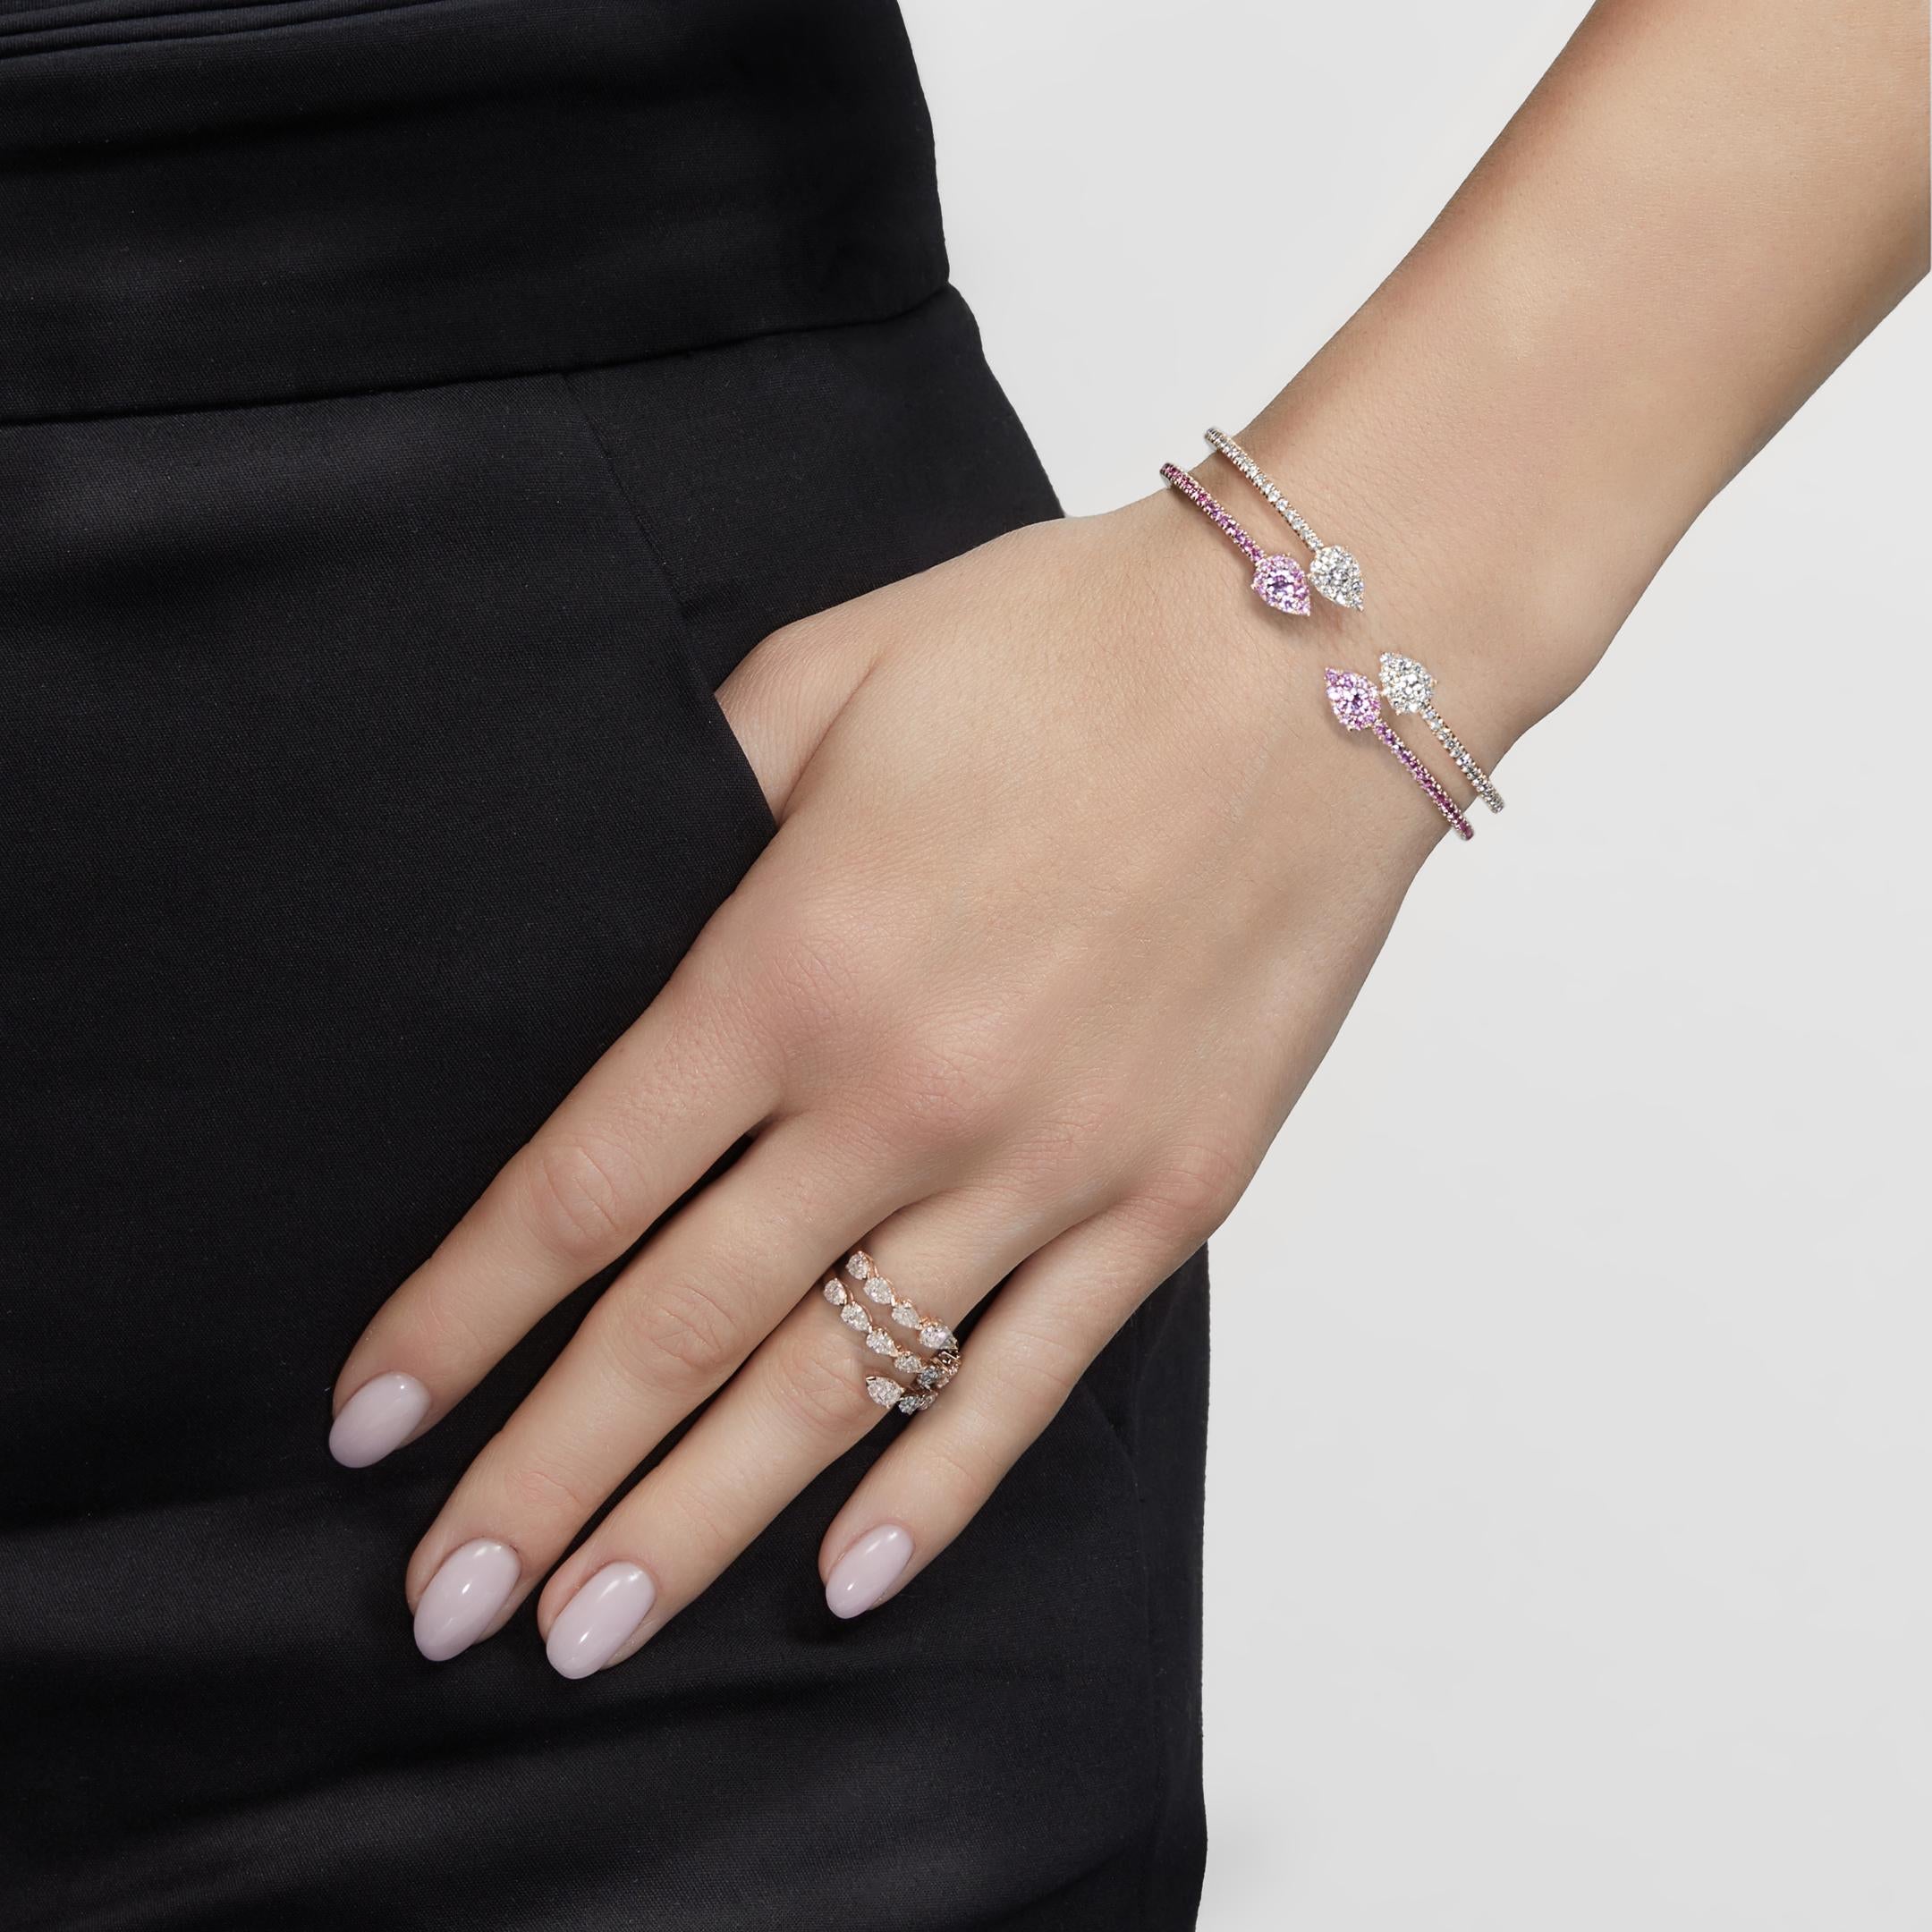 La bague en or rose Diamond Twist est composée de trois rangées de diamants étincelants. De superbes pierres en forme de poire serties dans de l'or rose 18 carats s'enroulent élégamment autour du doigt. Portez votre bague avec un jean, des talons et